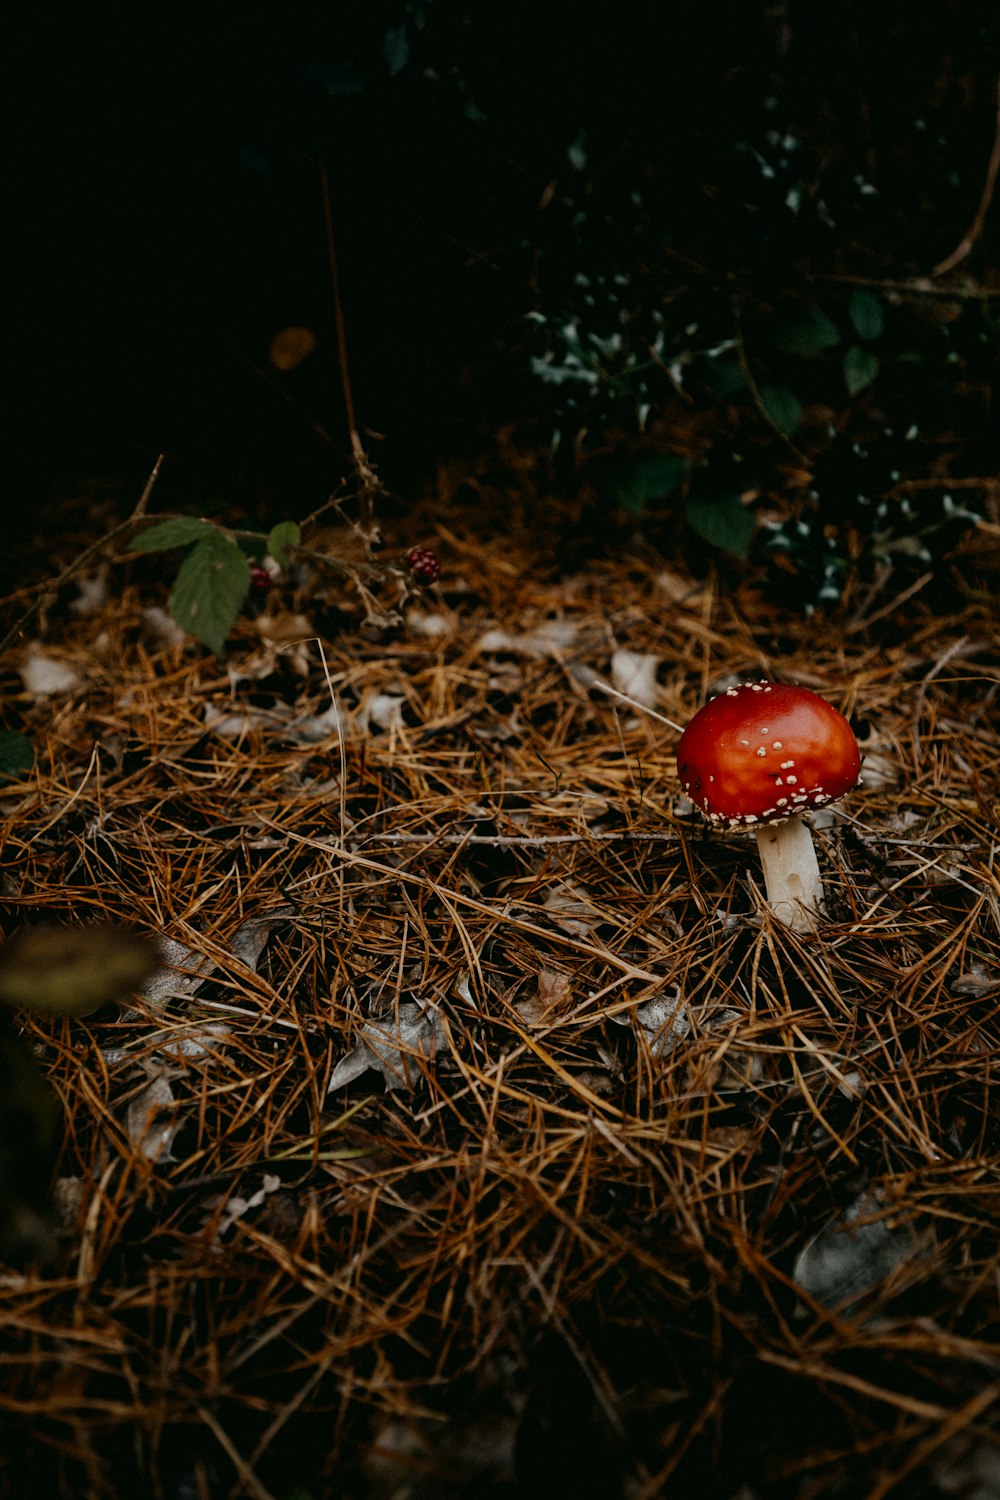 솔잎 더미 위에 앉아있는 빨간 버섯